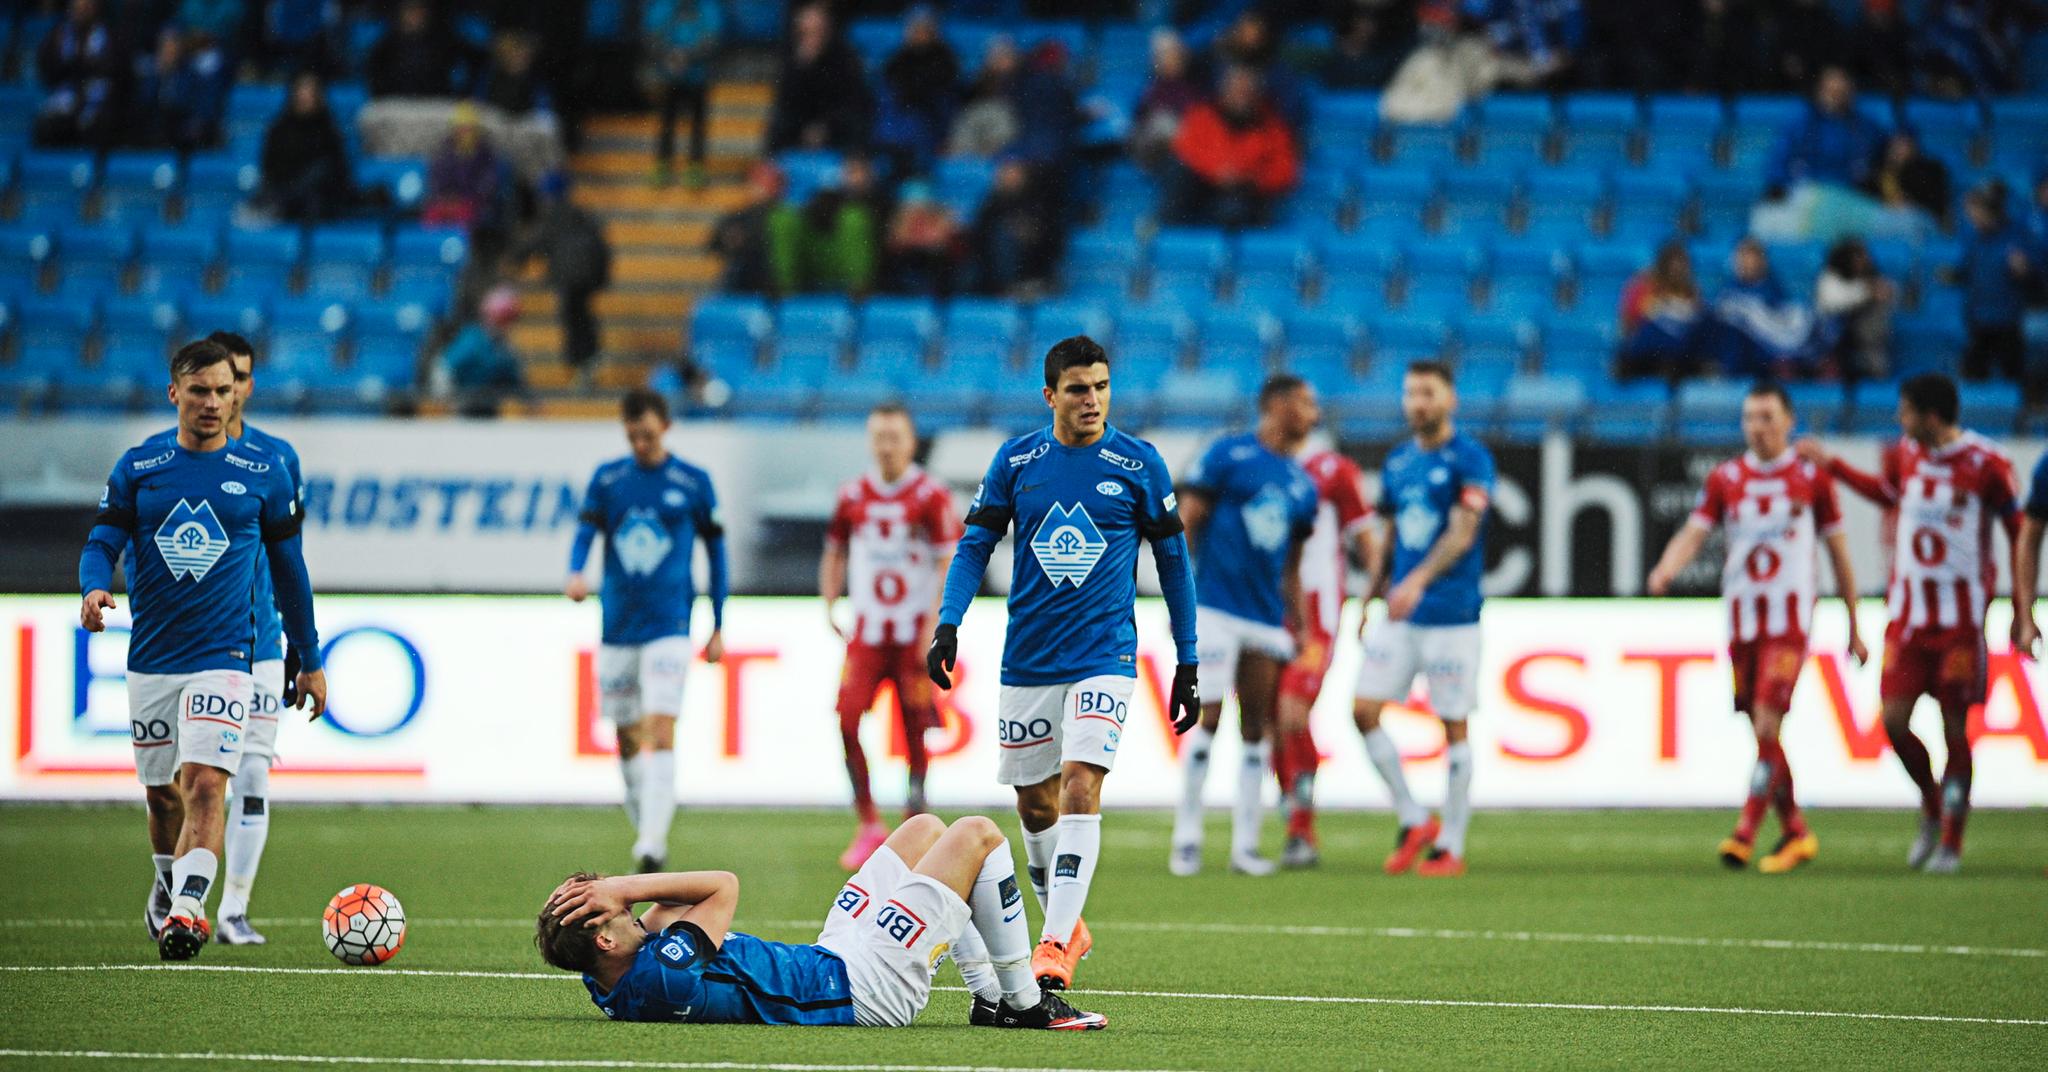 SKUFFET: Molde-spillerne var ikke spesielt tilfreds etter uavgjortåpningen hjemme mot Tromsø.